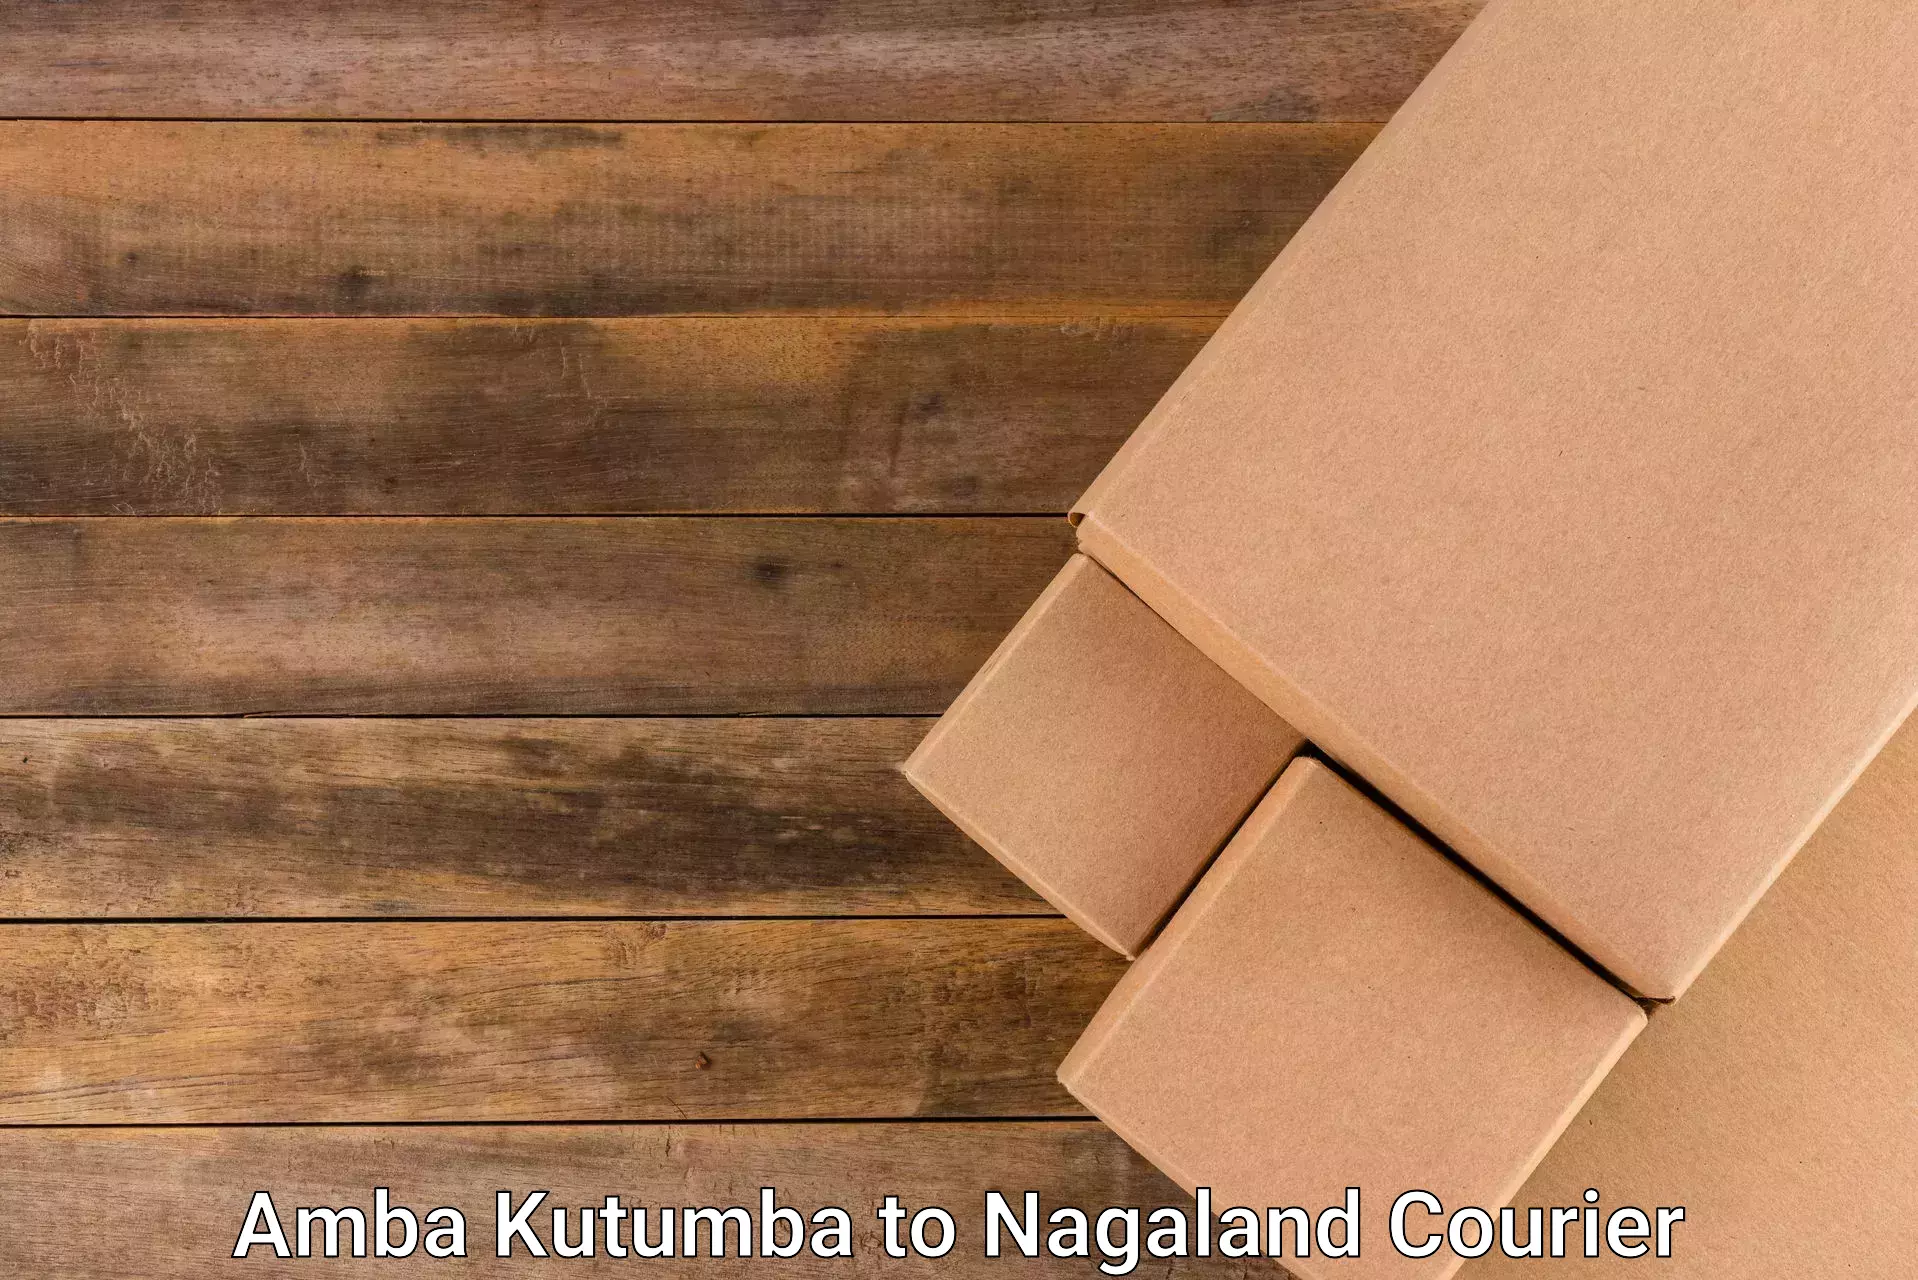 Cost-effective freight solutions Amba Kutumba to Chumukedima